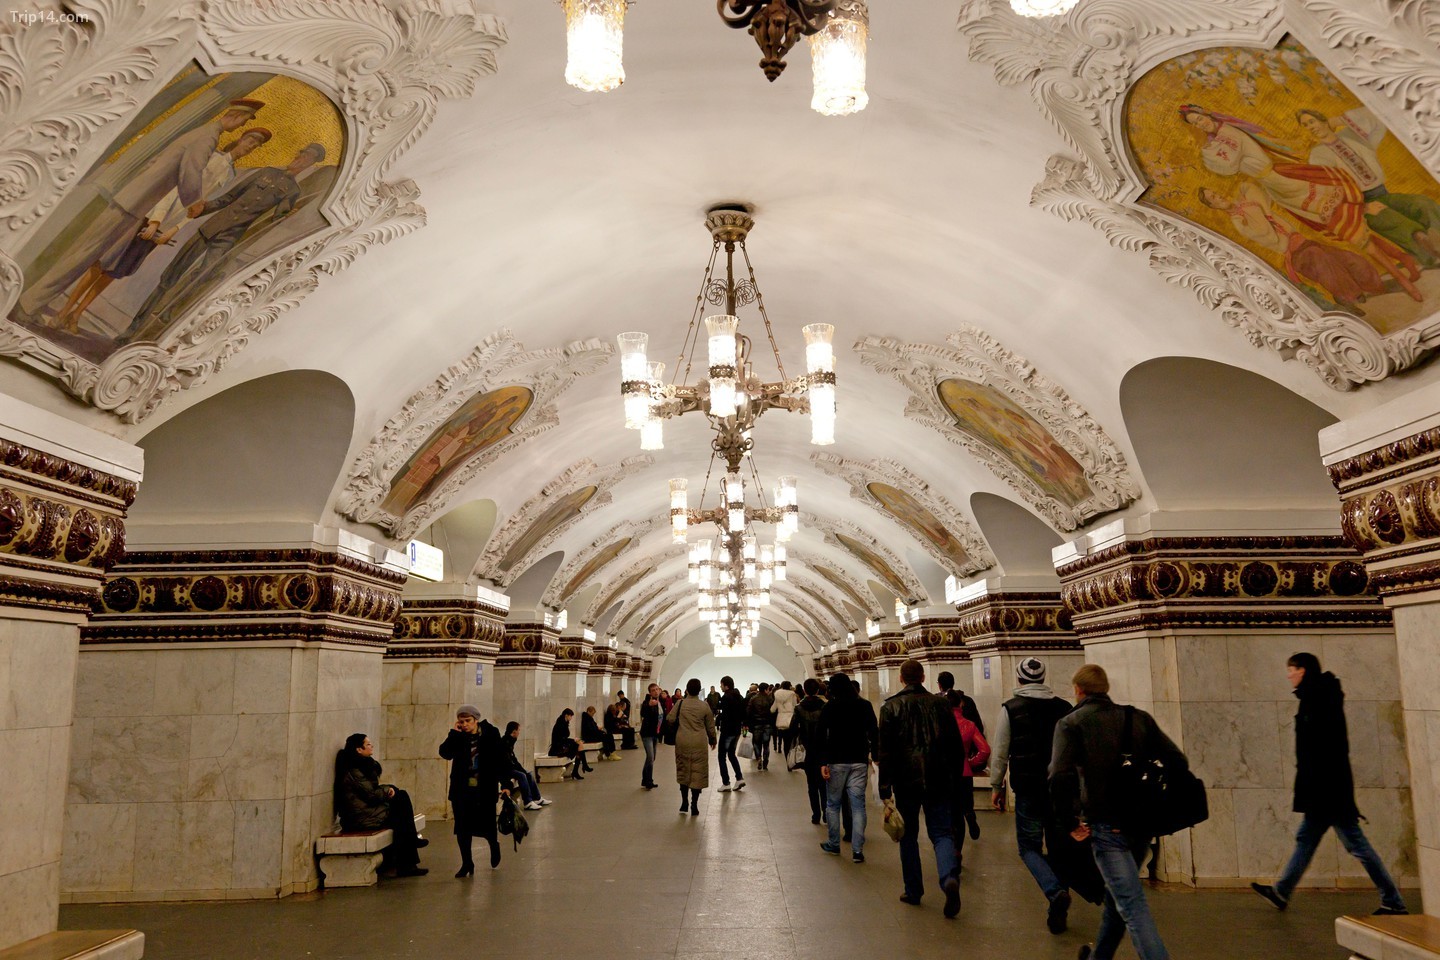 Ga tàu điện ngầm Kiyevskaya, Moscow